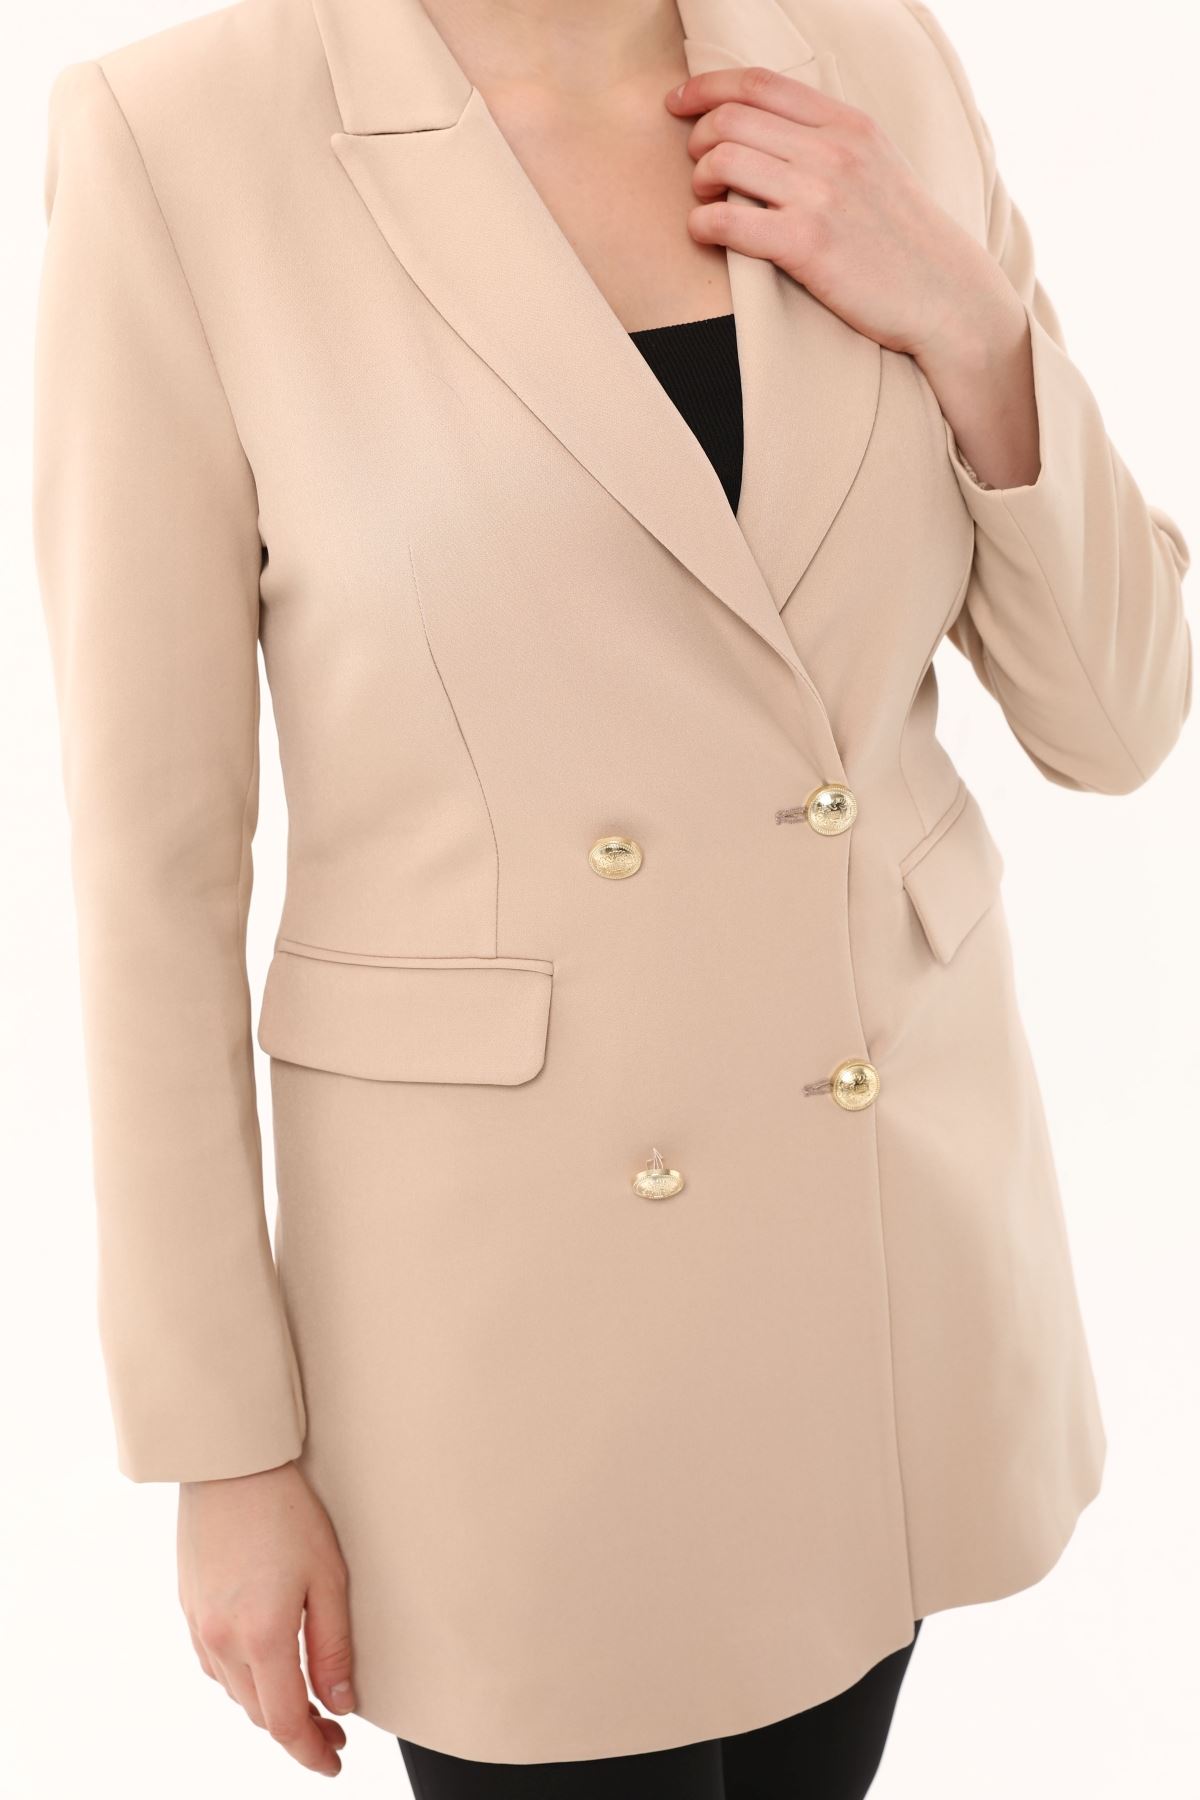 Cep Kapaklı Düğmeli Kadın Ceket